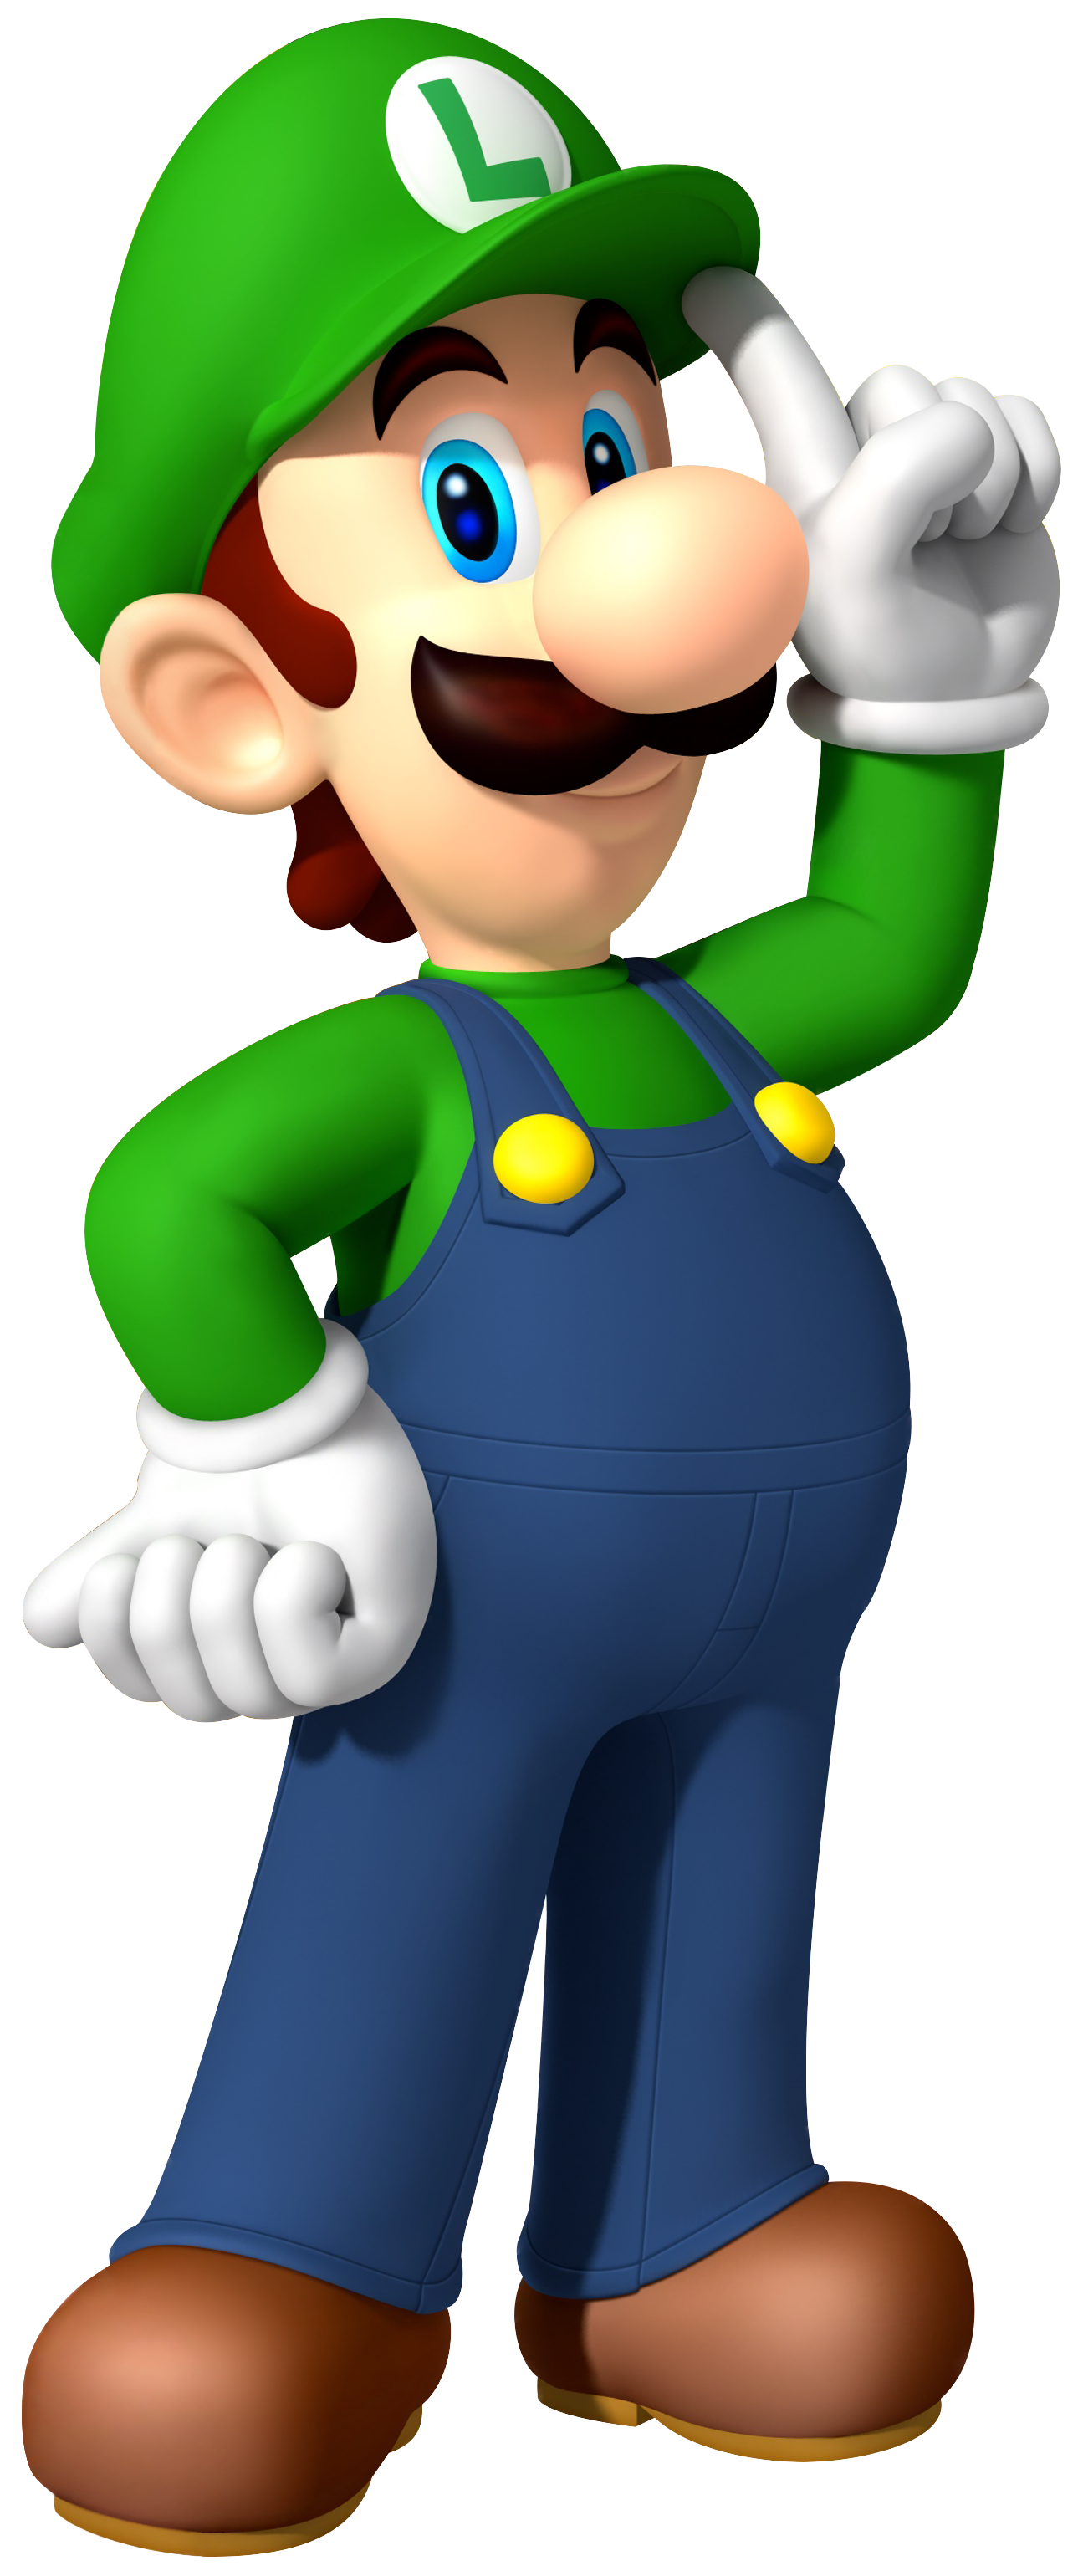 Image - Luigi in Mario Party 100.png | Nintendo | FANDOM powered by Wikia